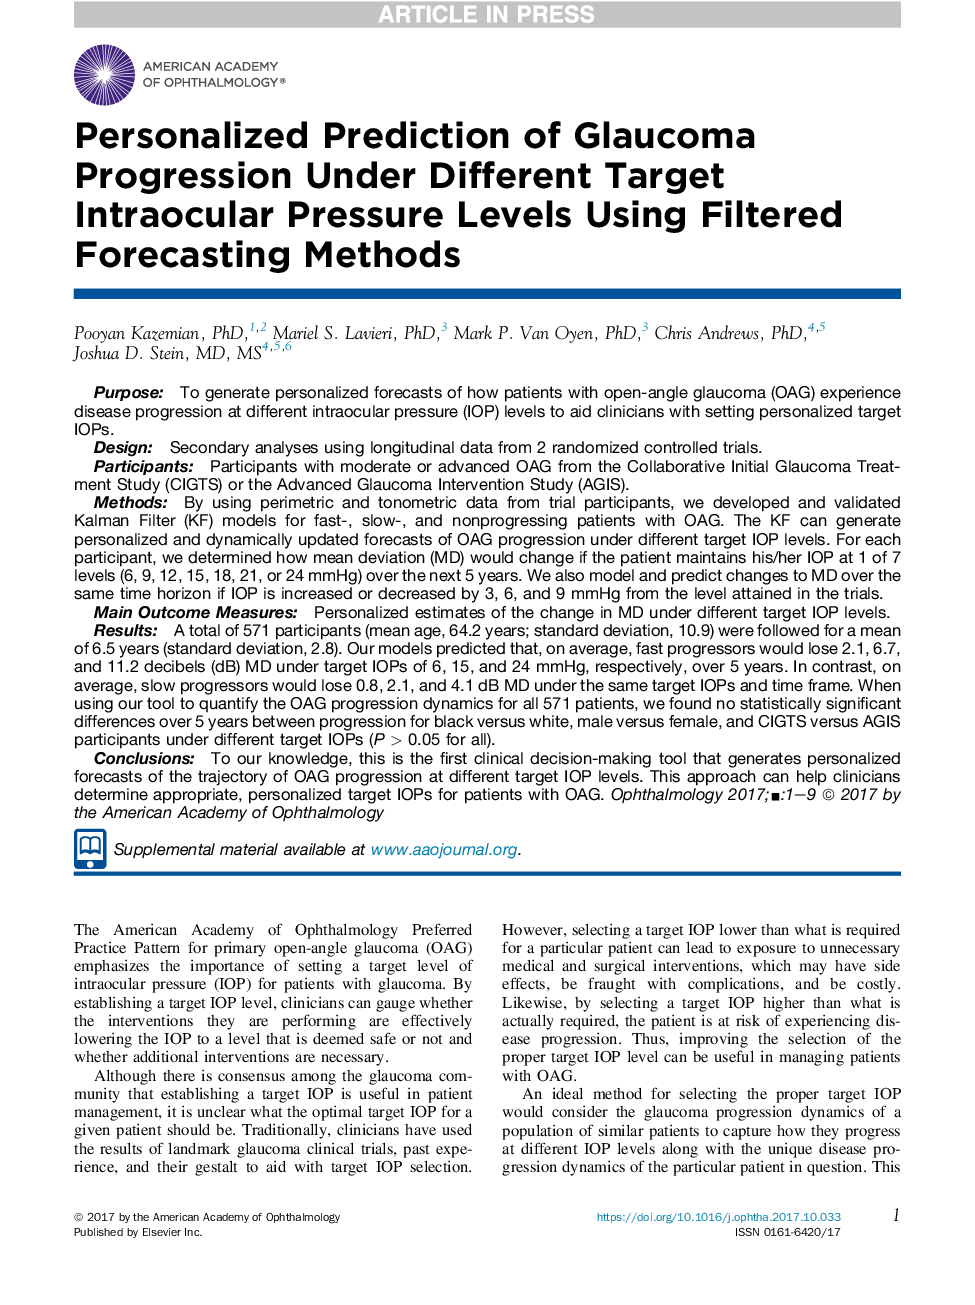 پیش بینی شخصی پیشرفت گلوکوم در سطوح مختلف فشار داخل دریایی هدف با استفاده از روش های پیش بینی شده فیلتر شده 